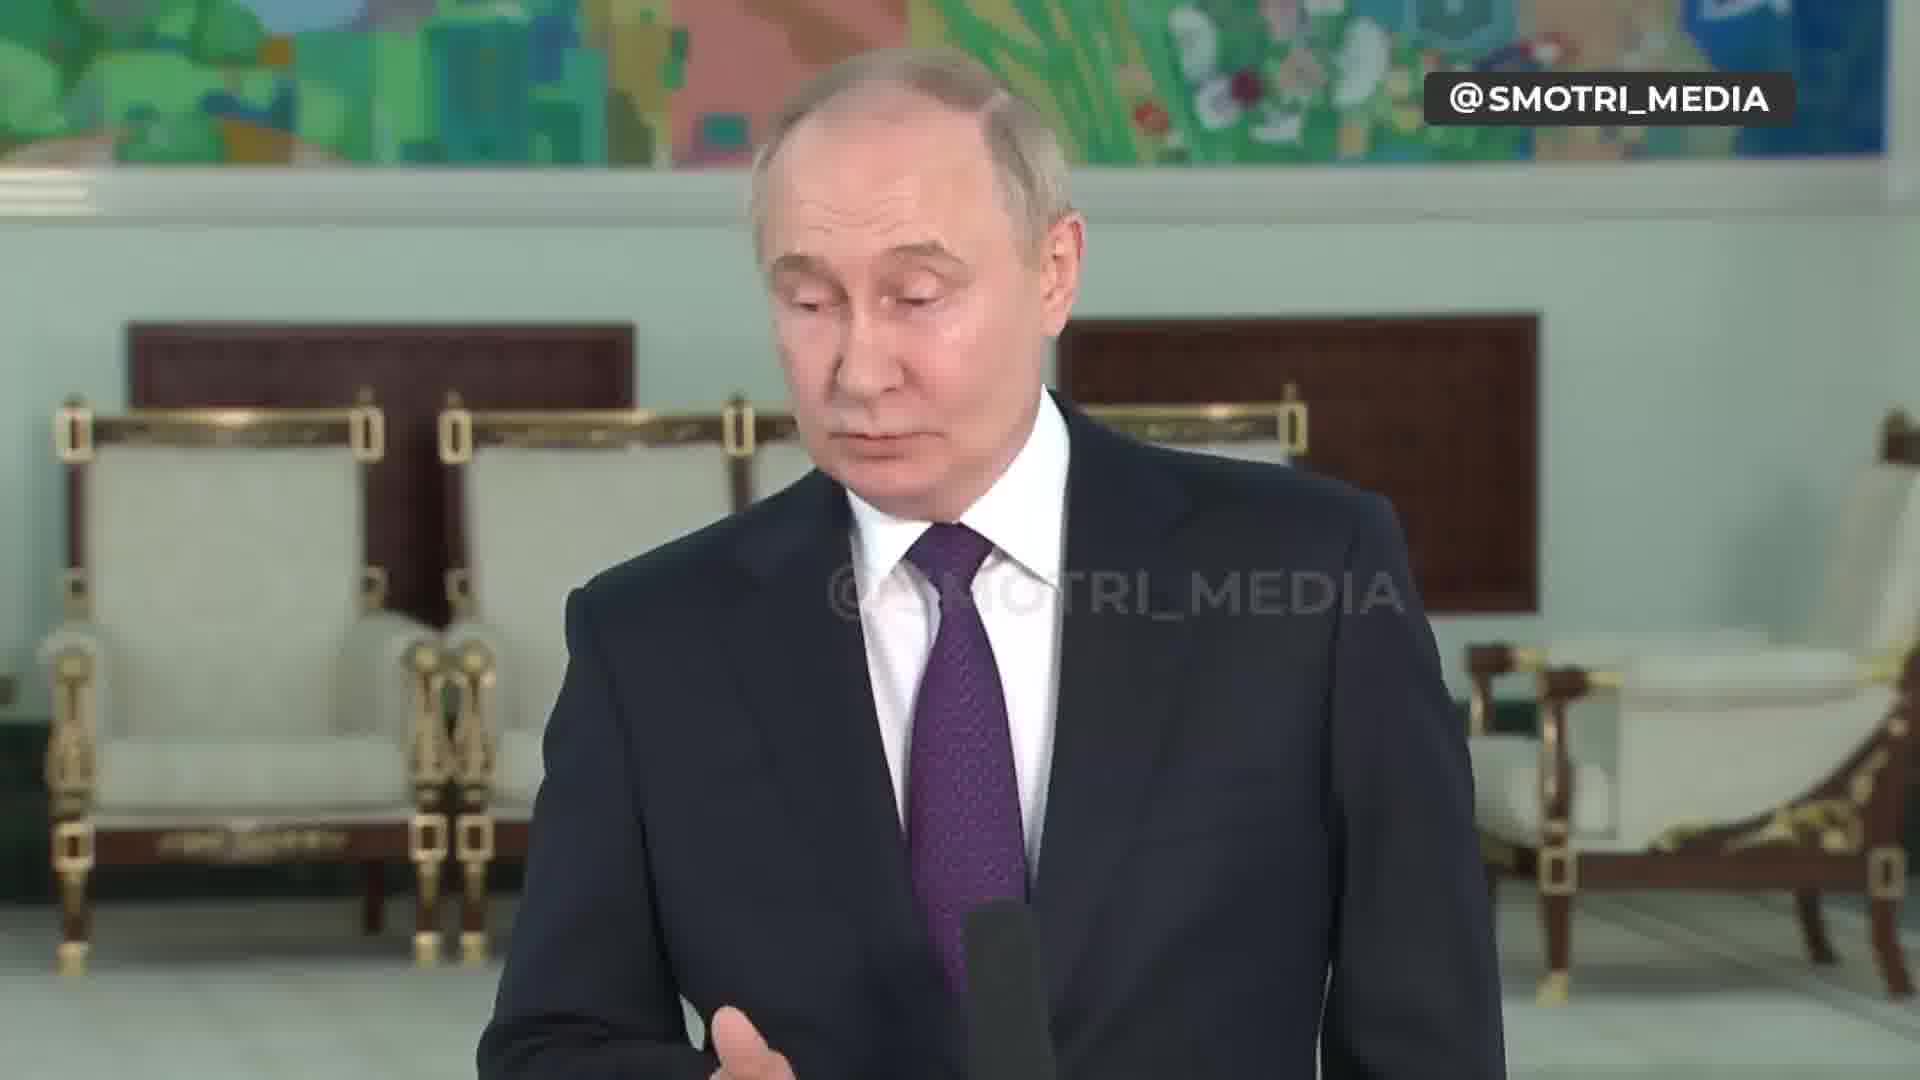 Putinas sako, kad Ukrainos Aukščiausioji Rada yra teisėta, o Aukščiausiosios Rados pirmininkas turėtų būti laikinai einantis prezidento pareigas